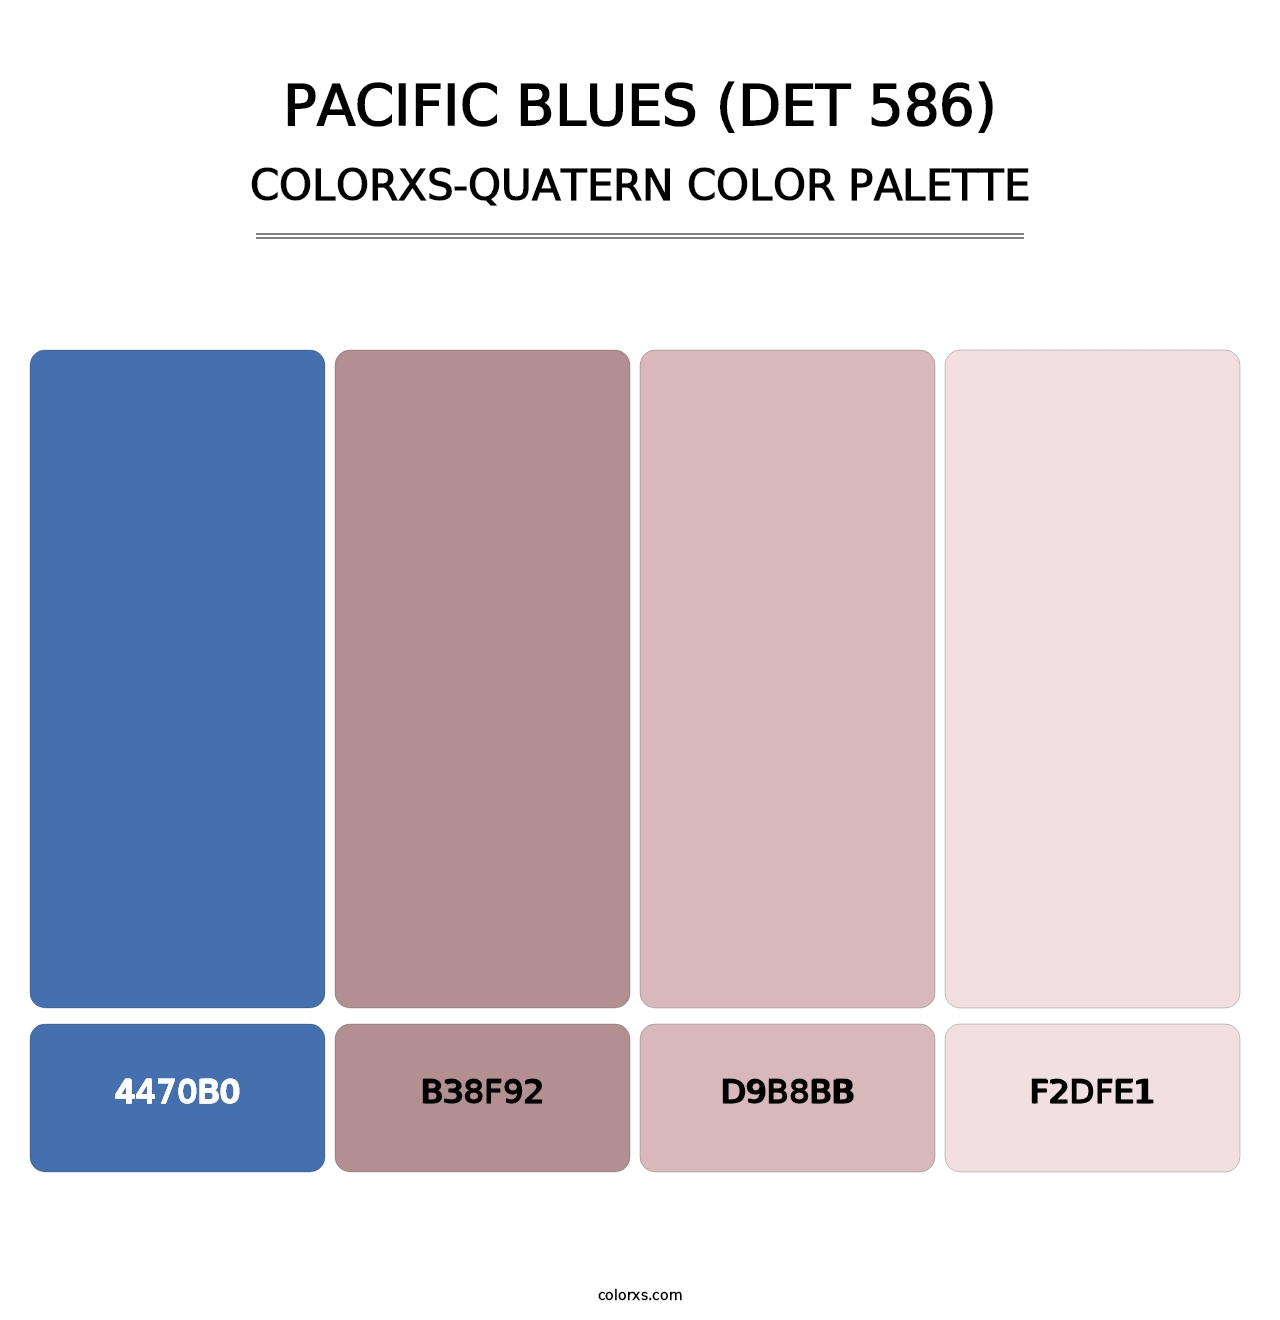 Pacific Blues (DET 586) - Colorxs Quatern Palette